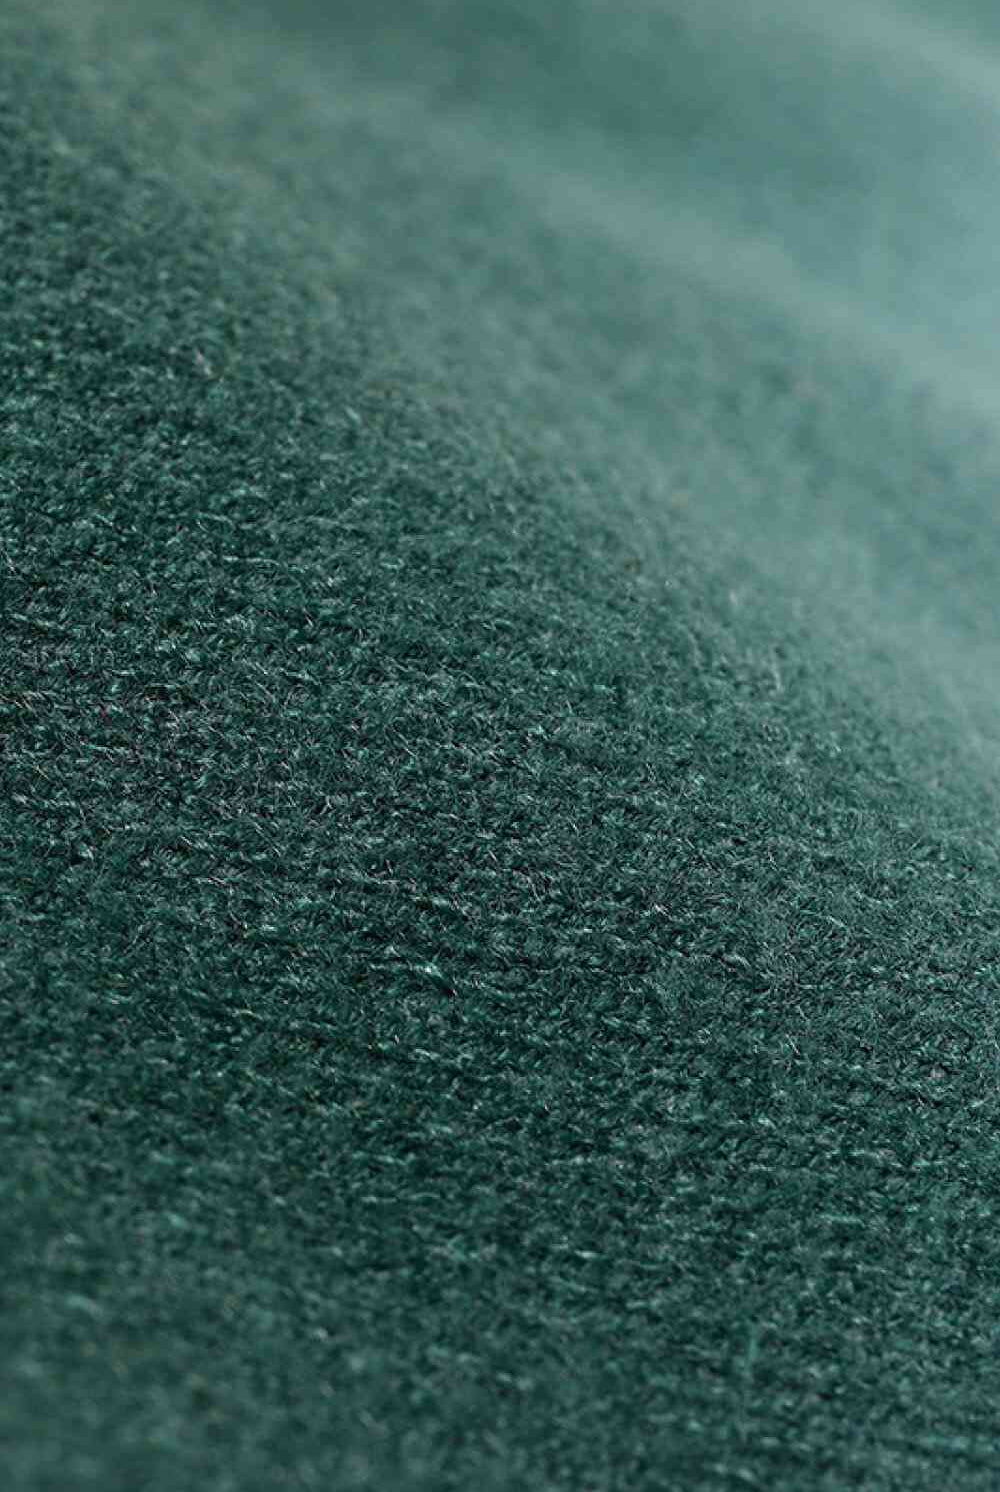 Dark Slate Gray Gradient Knit Beanie Winter Accessories